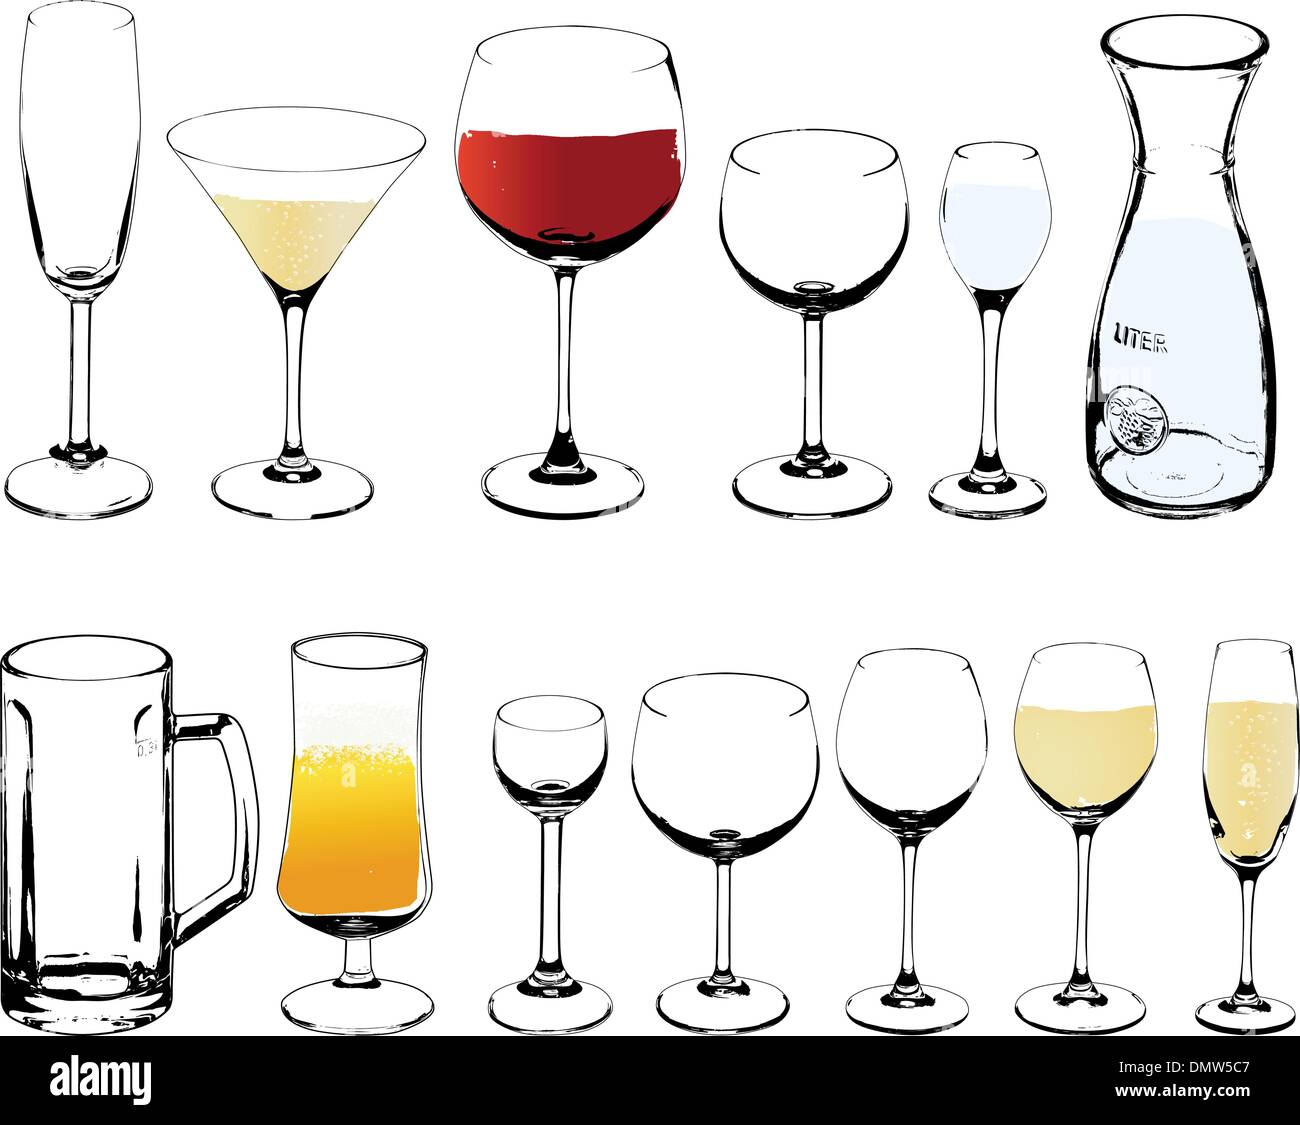 https://c8.alamy.com/comp/DMW5C7/vector-wine-and-cognac-glasses-DMW5C7.jpg